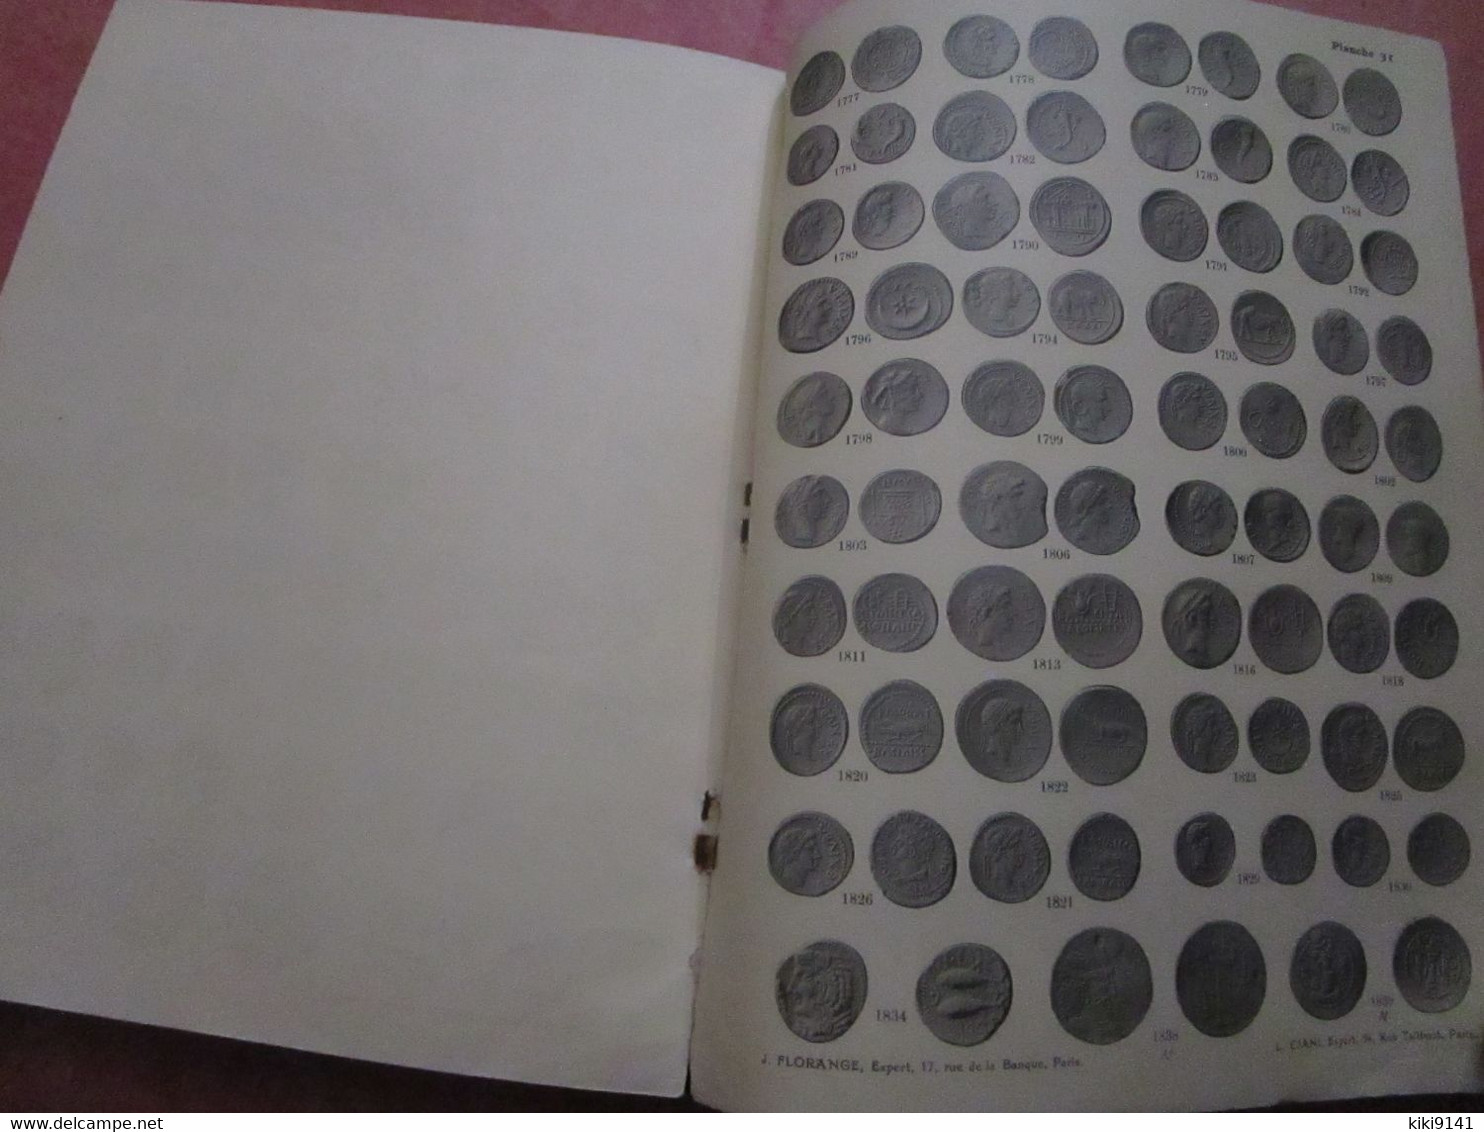 MONNAIES GRECQUES - Catalogue 110 pages descriptives + 31 Planches illustrées